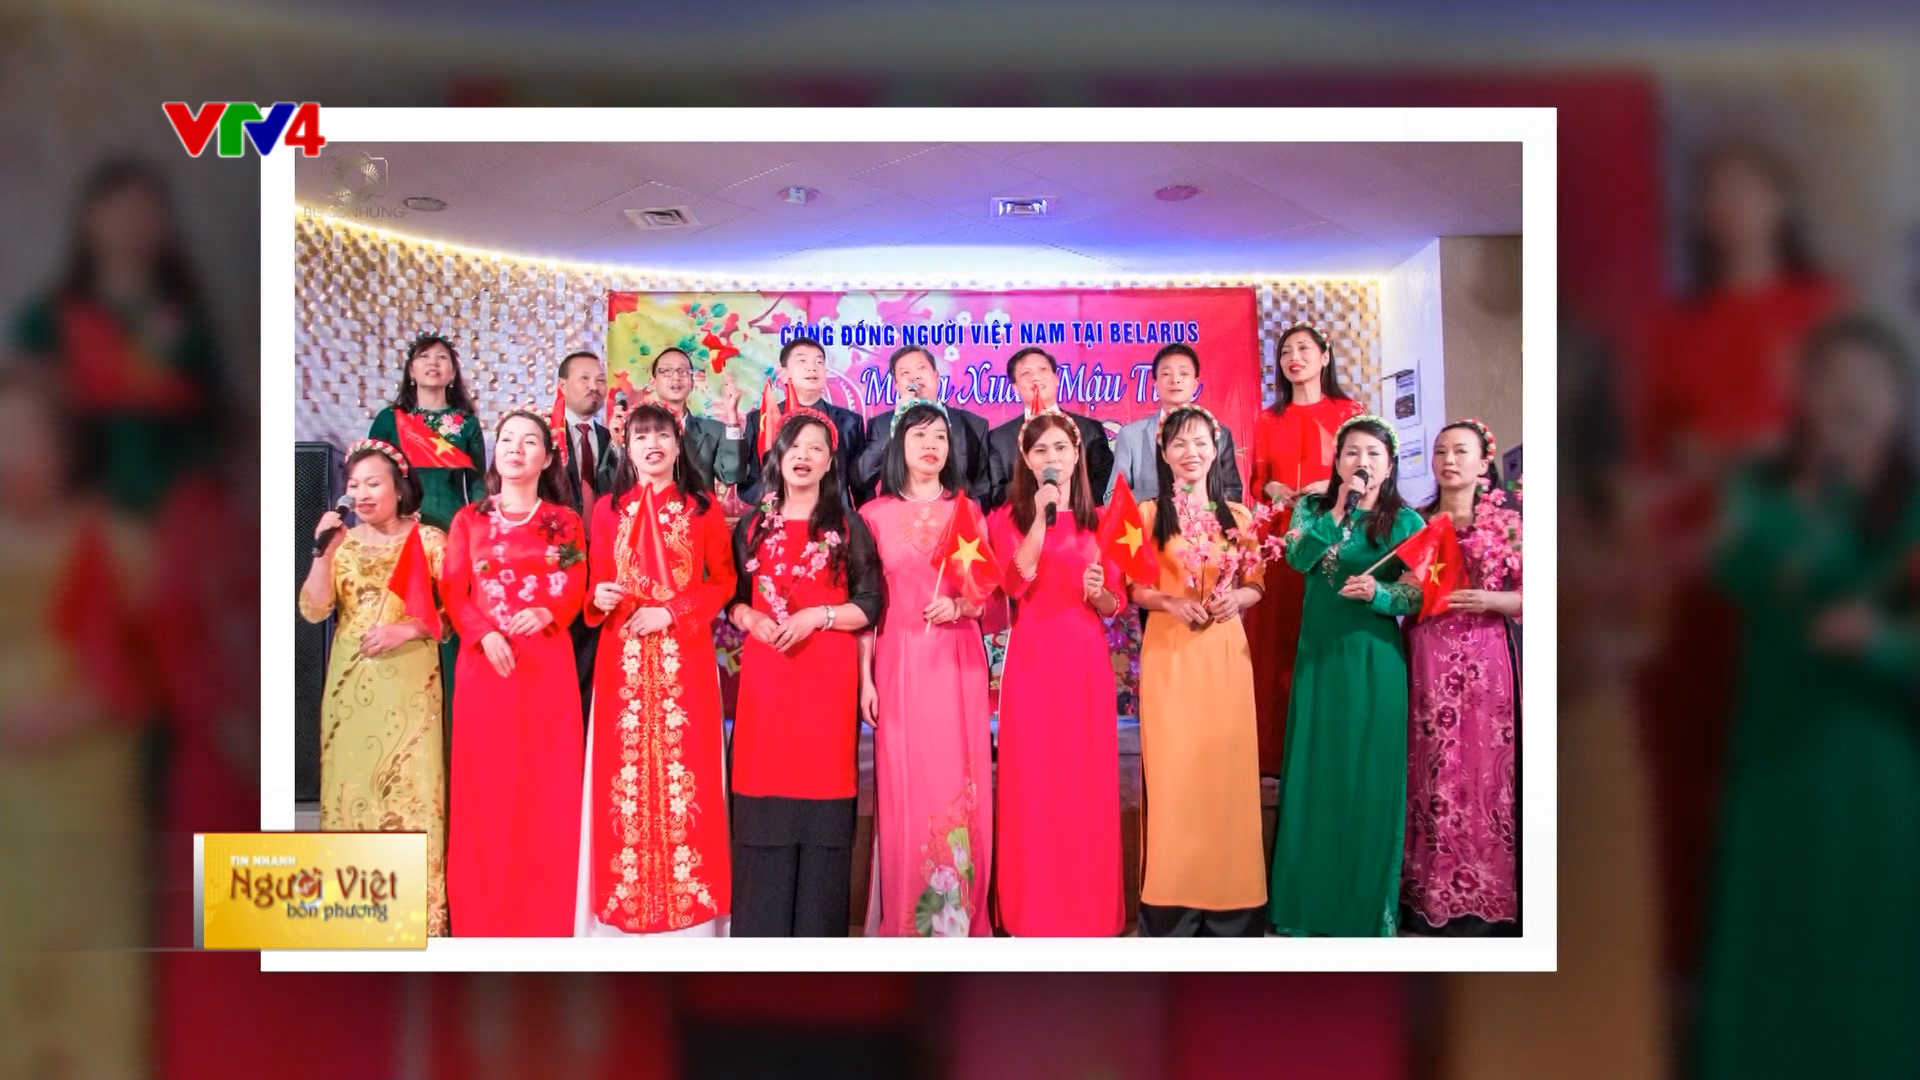 Hội người Việt Nam tại Belarus liên hoan mừng năm mới